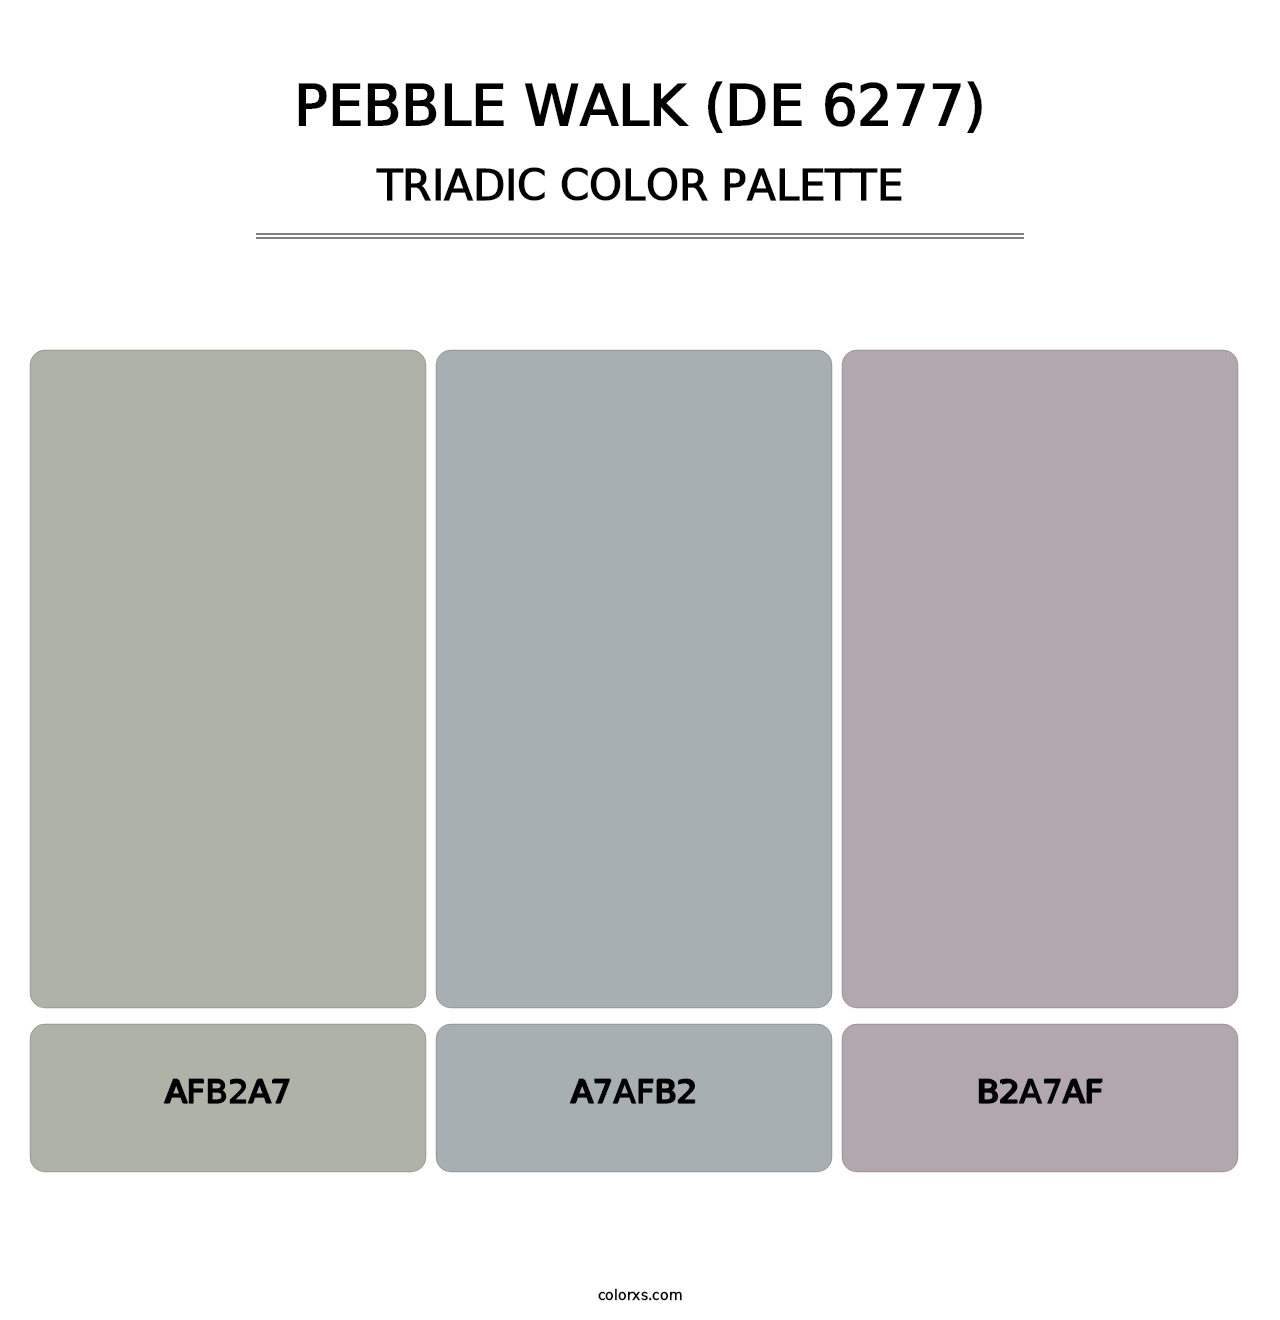 Pebble Walk (DE 6277) - Triadic Color Palette